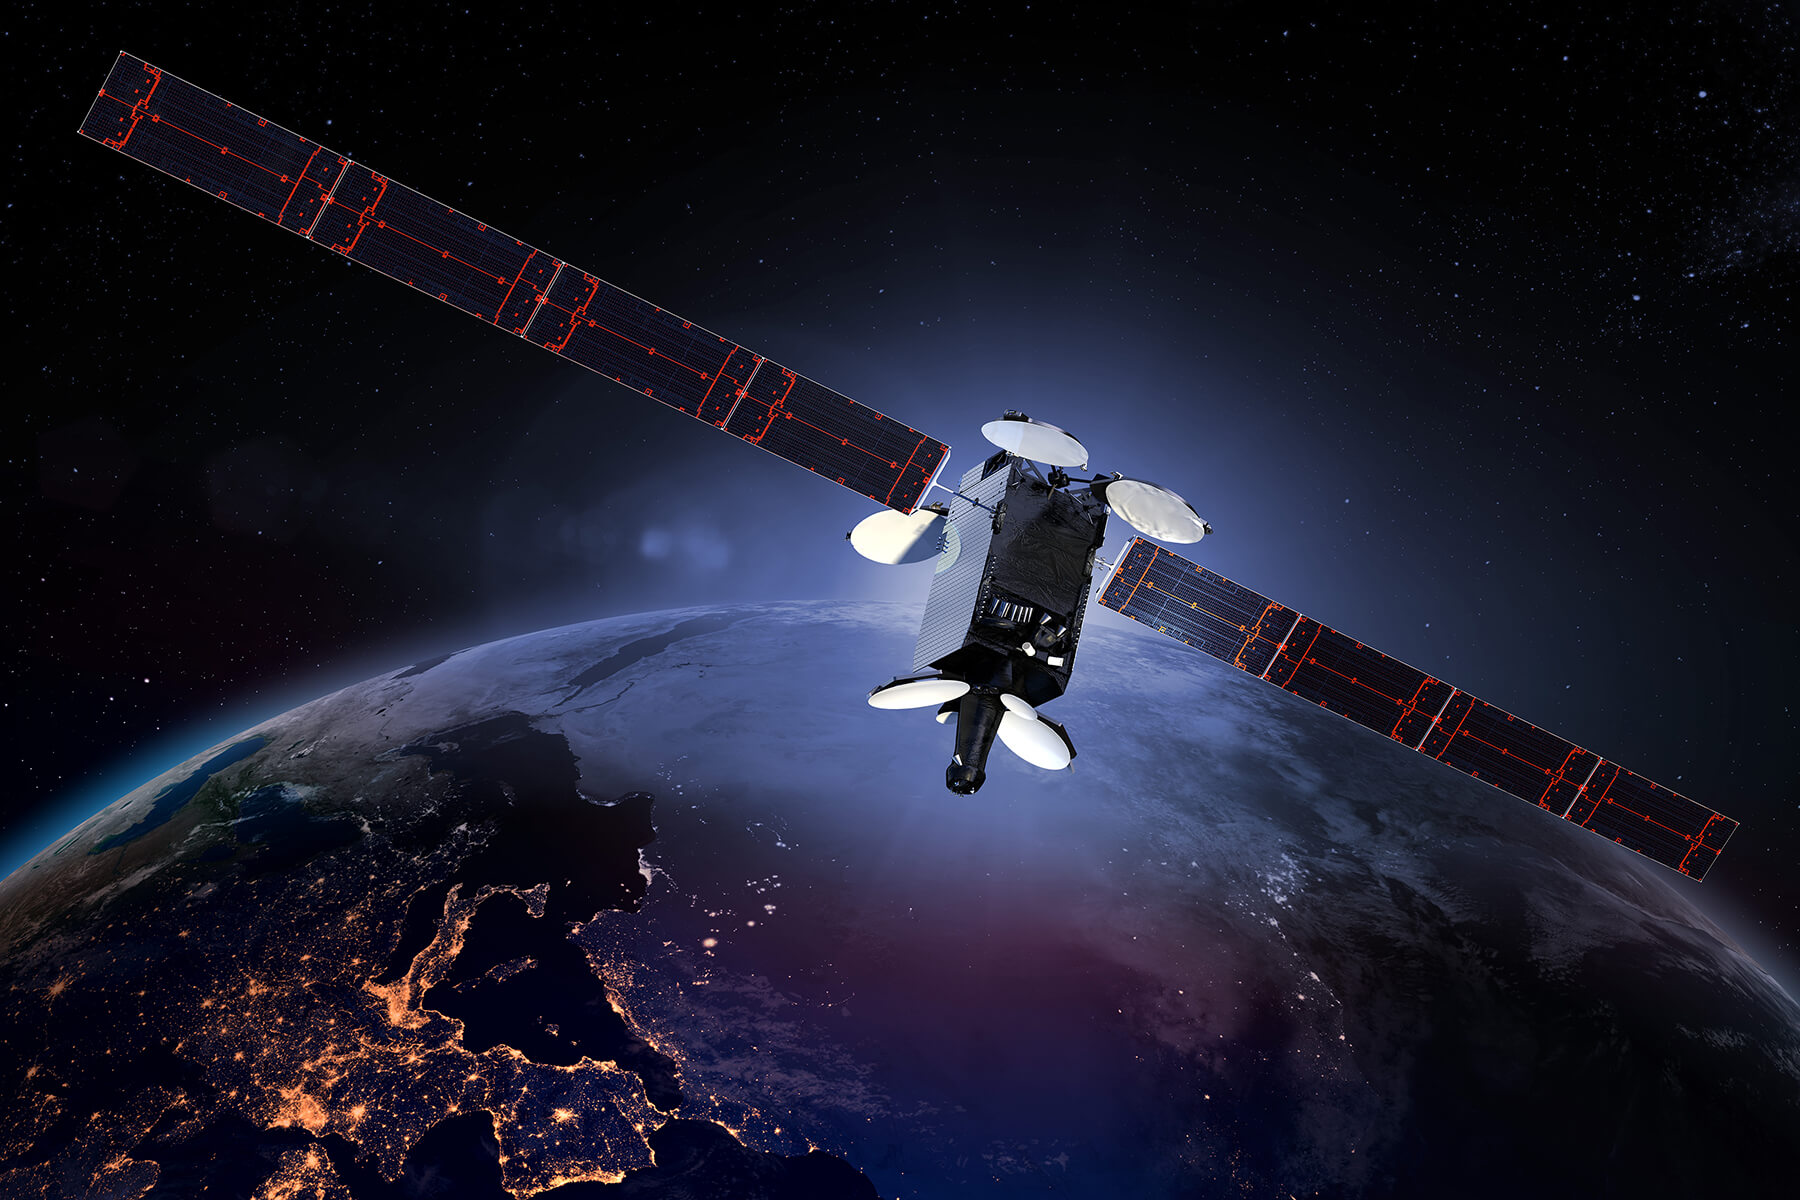 Охота на орбитальные спутники: лазеры, роботизированные охотники и другие способы утилизации аппаратов - 1